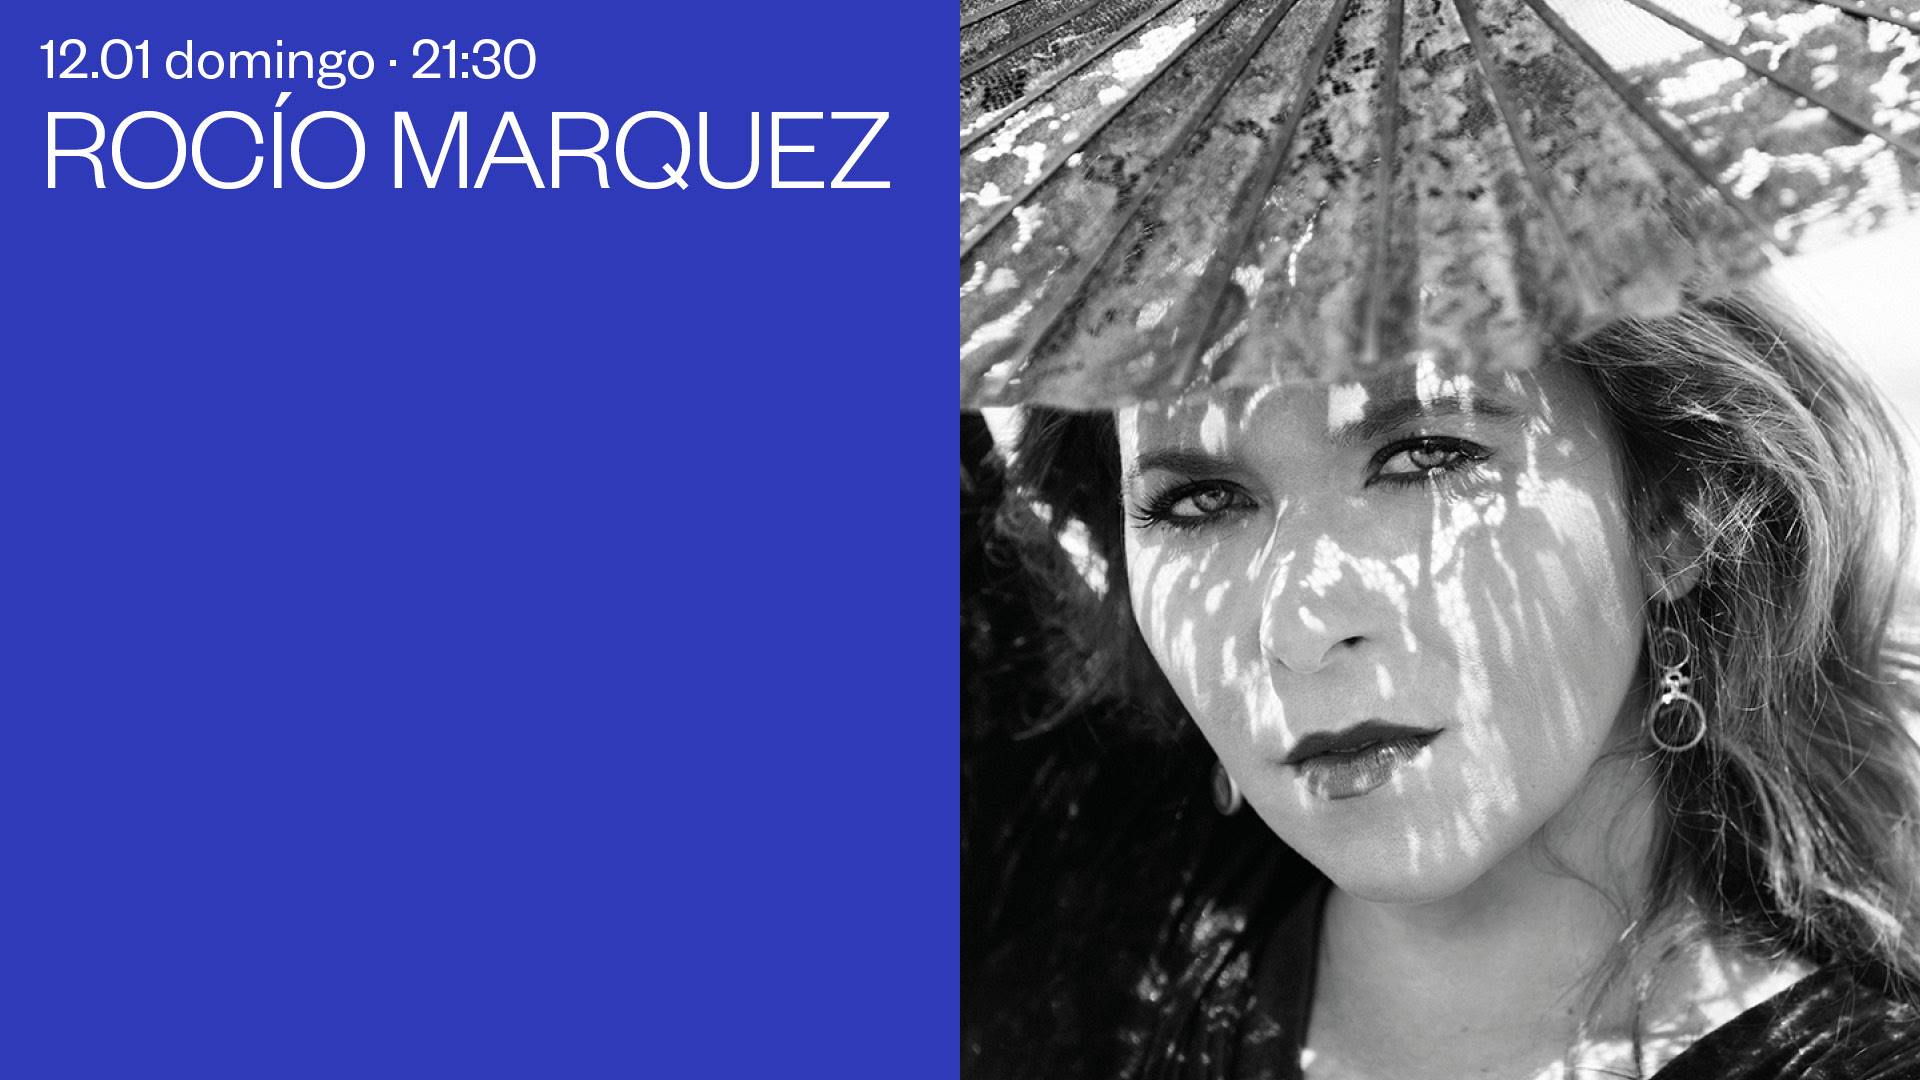 Rocío Marquez - Event